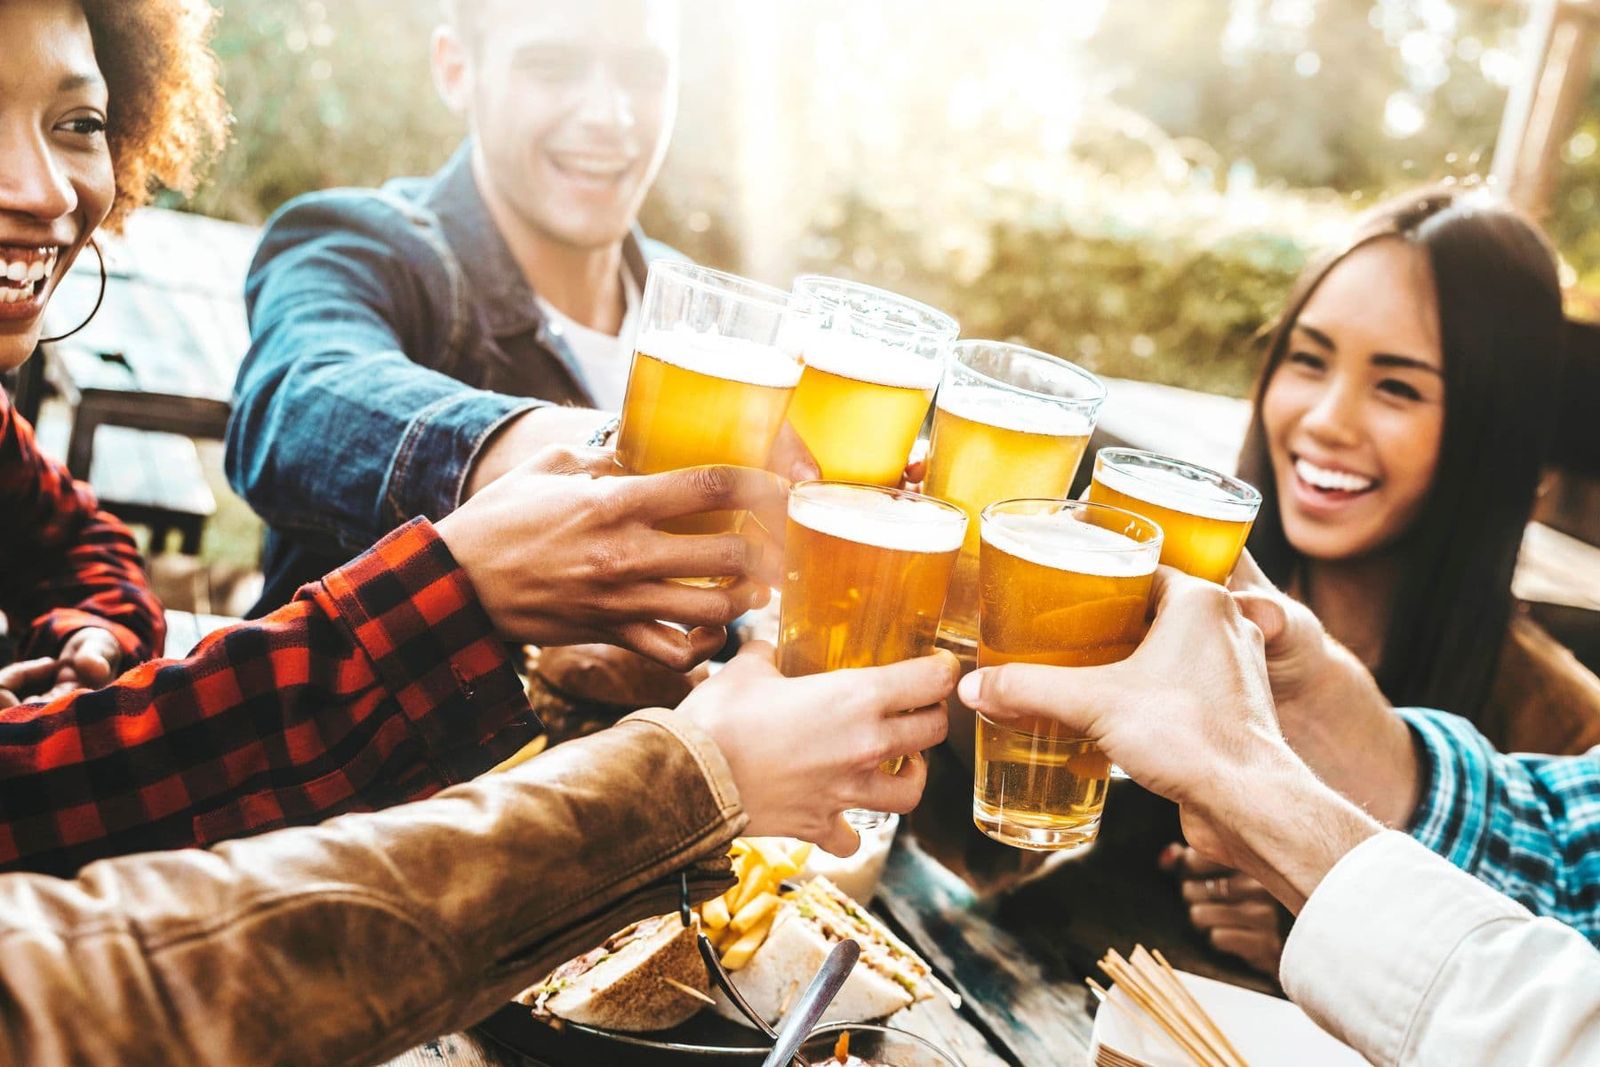 Beers Pot, Schooner, Pint or Jug? | Happy Hour Drinks & Specials